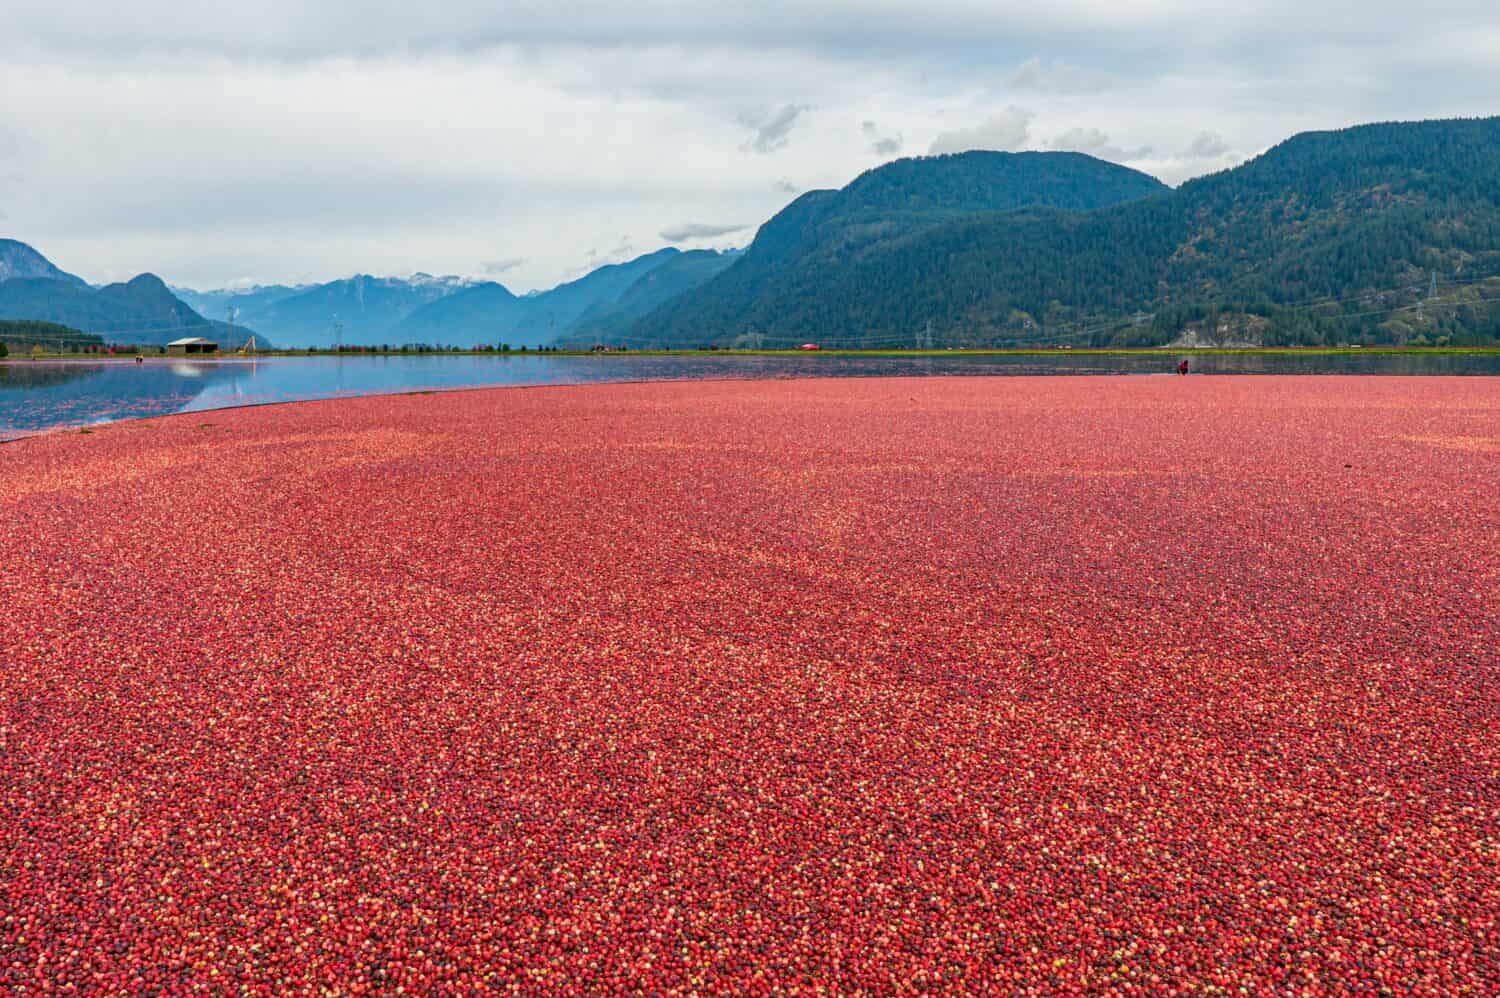 Una vista mozzafiato del processo di raccolta dei mirtilli rossi, mirtilli galleggianti nell'acqua